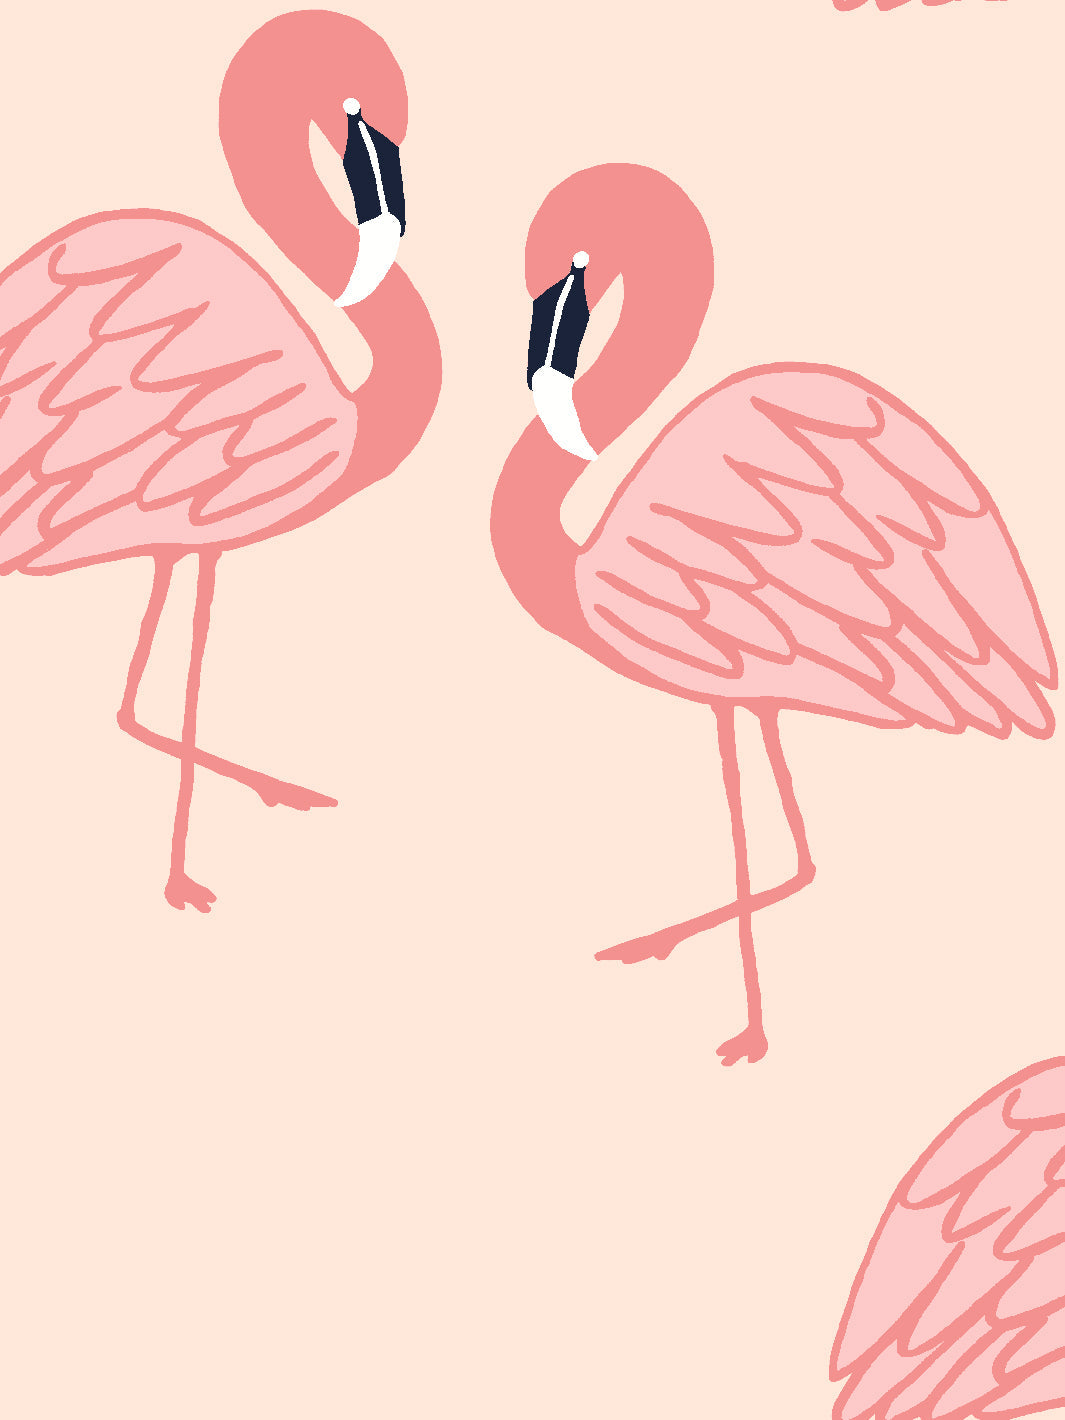 'Flamingos' Wallpaper by Tea Collection - Peach